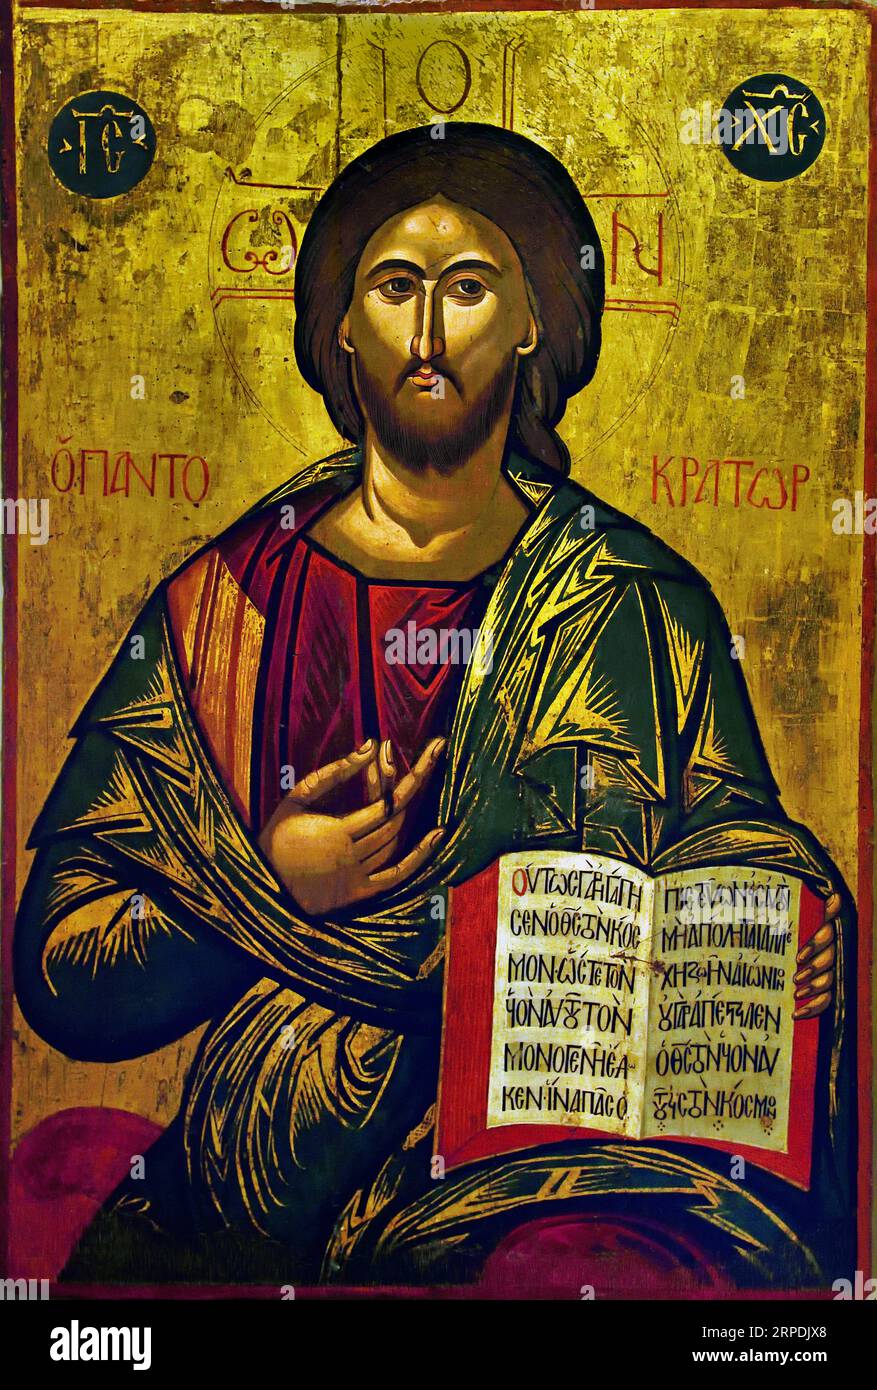 Symbol von Christ Pantokrator. Es wird dem Maler Michael Damaskenos zugeschrieben. Zweite Hälfte des 16 Jahrhunderts Athen Griechenland Byzantinisches Museum Orthodoxe Kirche Griechisch ( icon ) Stockfoto